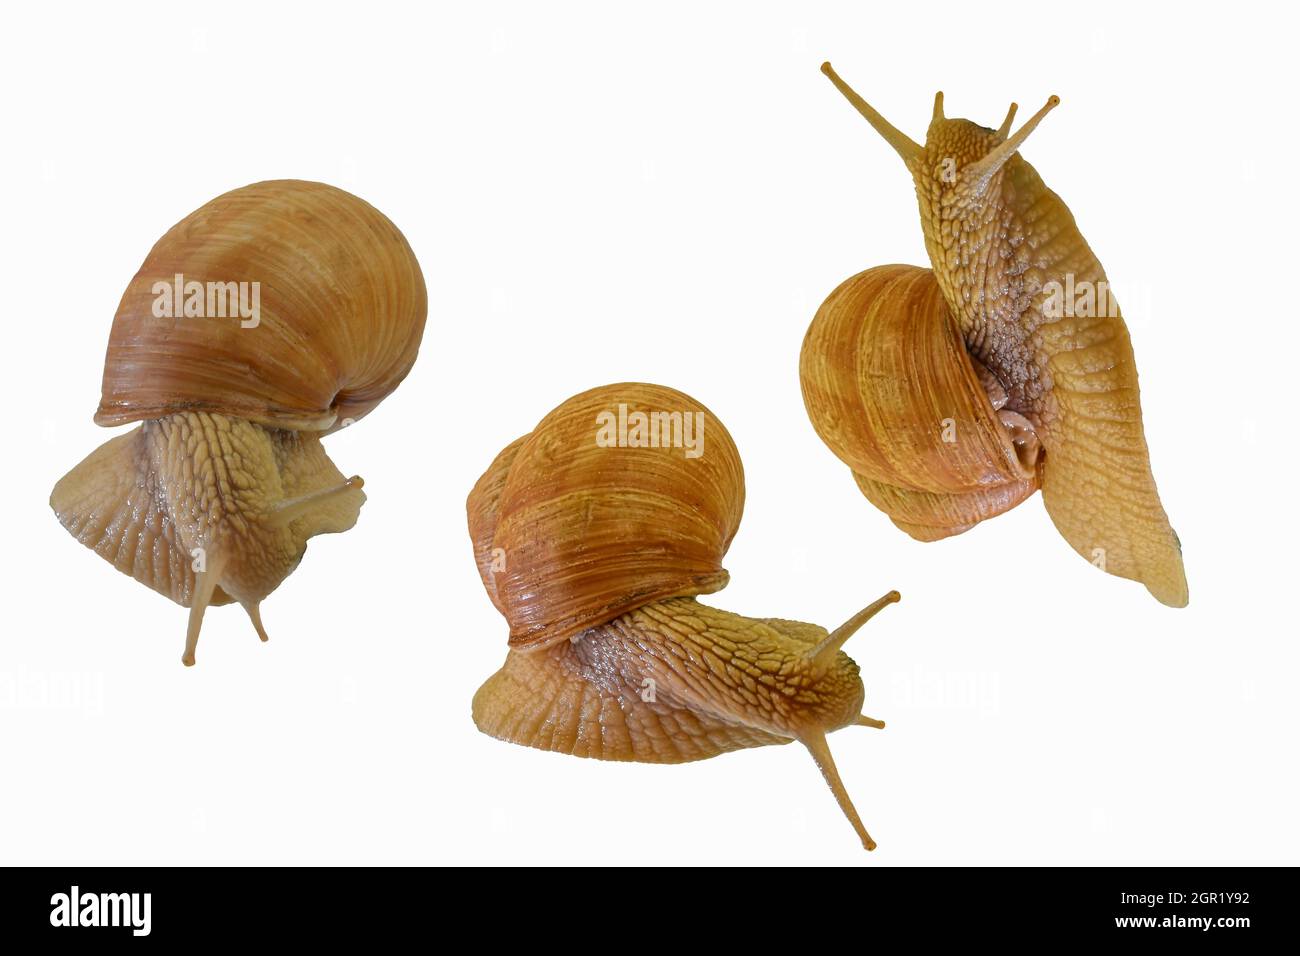 Ensemble de trois escargots rampant sur fond blanc. Helix pomatia, collection de trois escargots isolés sur fond blanc, vue latérale et directement au-dessus Banque D'Images